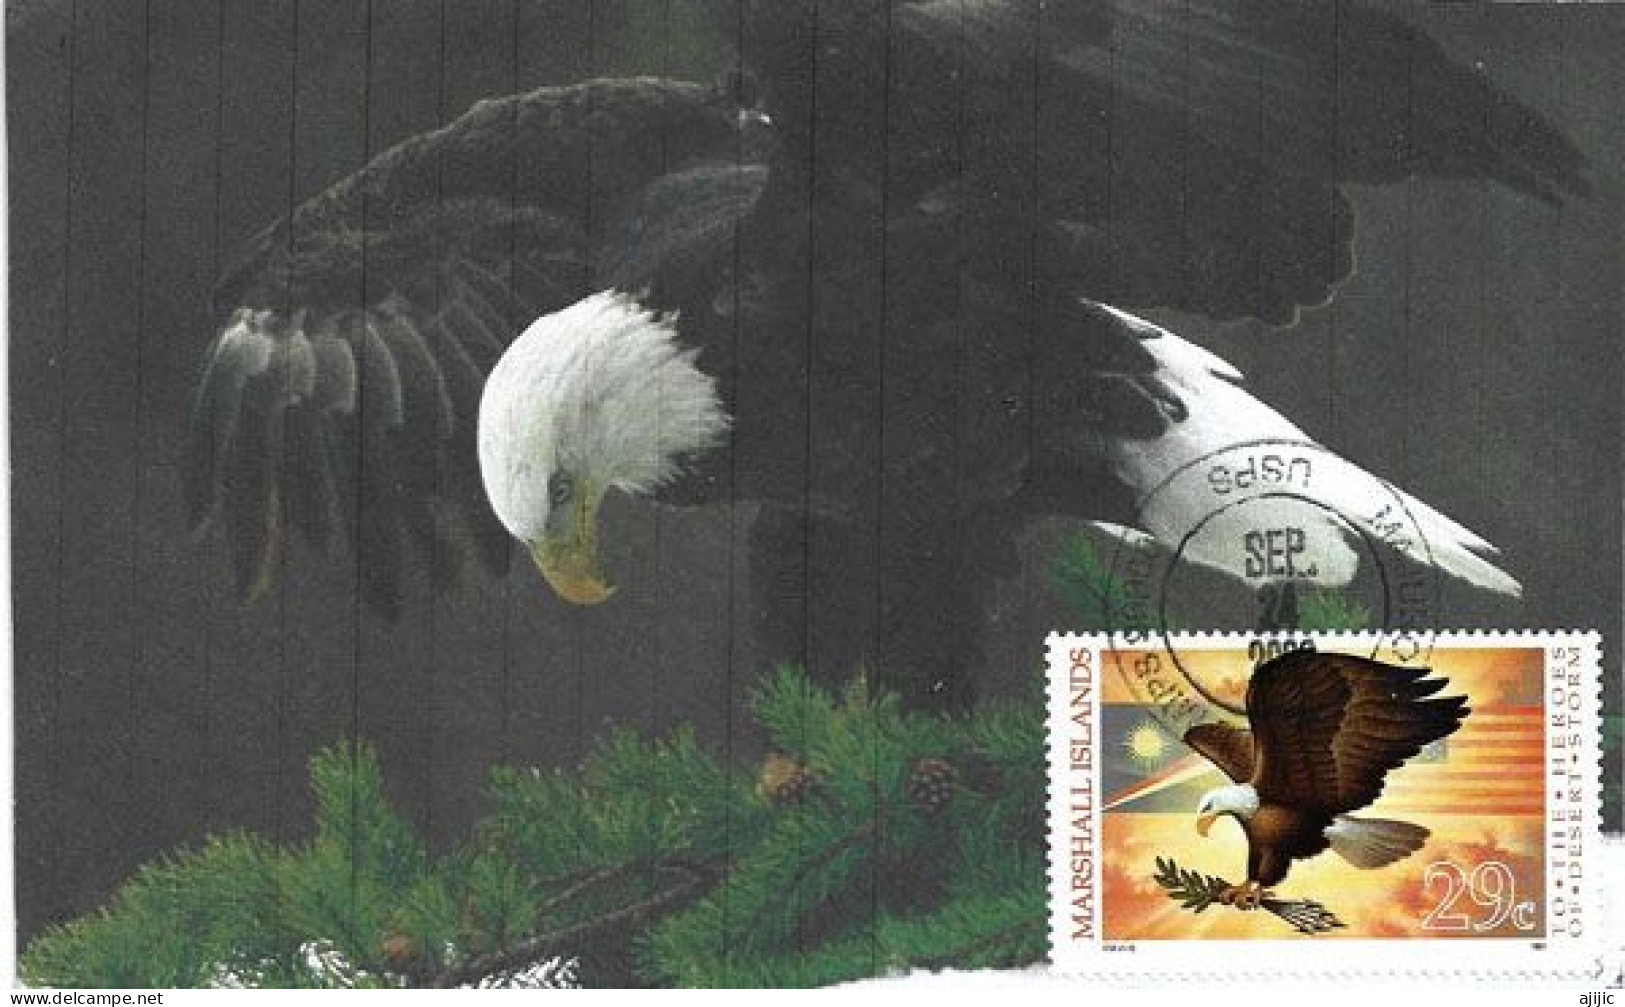 MARSHALL ISLAND: American Eagle (Bald Eagle)   MAXI-CARD From Majuro Marshall Islands - Marshalleilanden